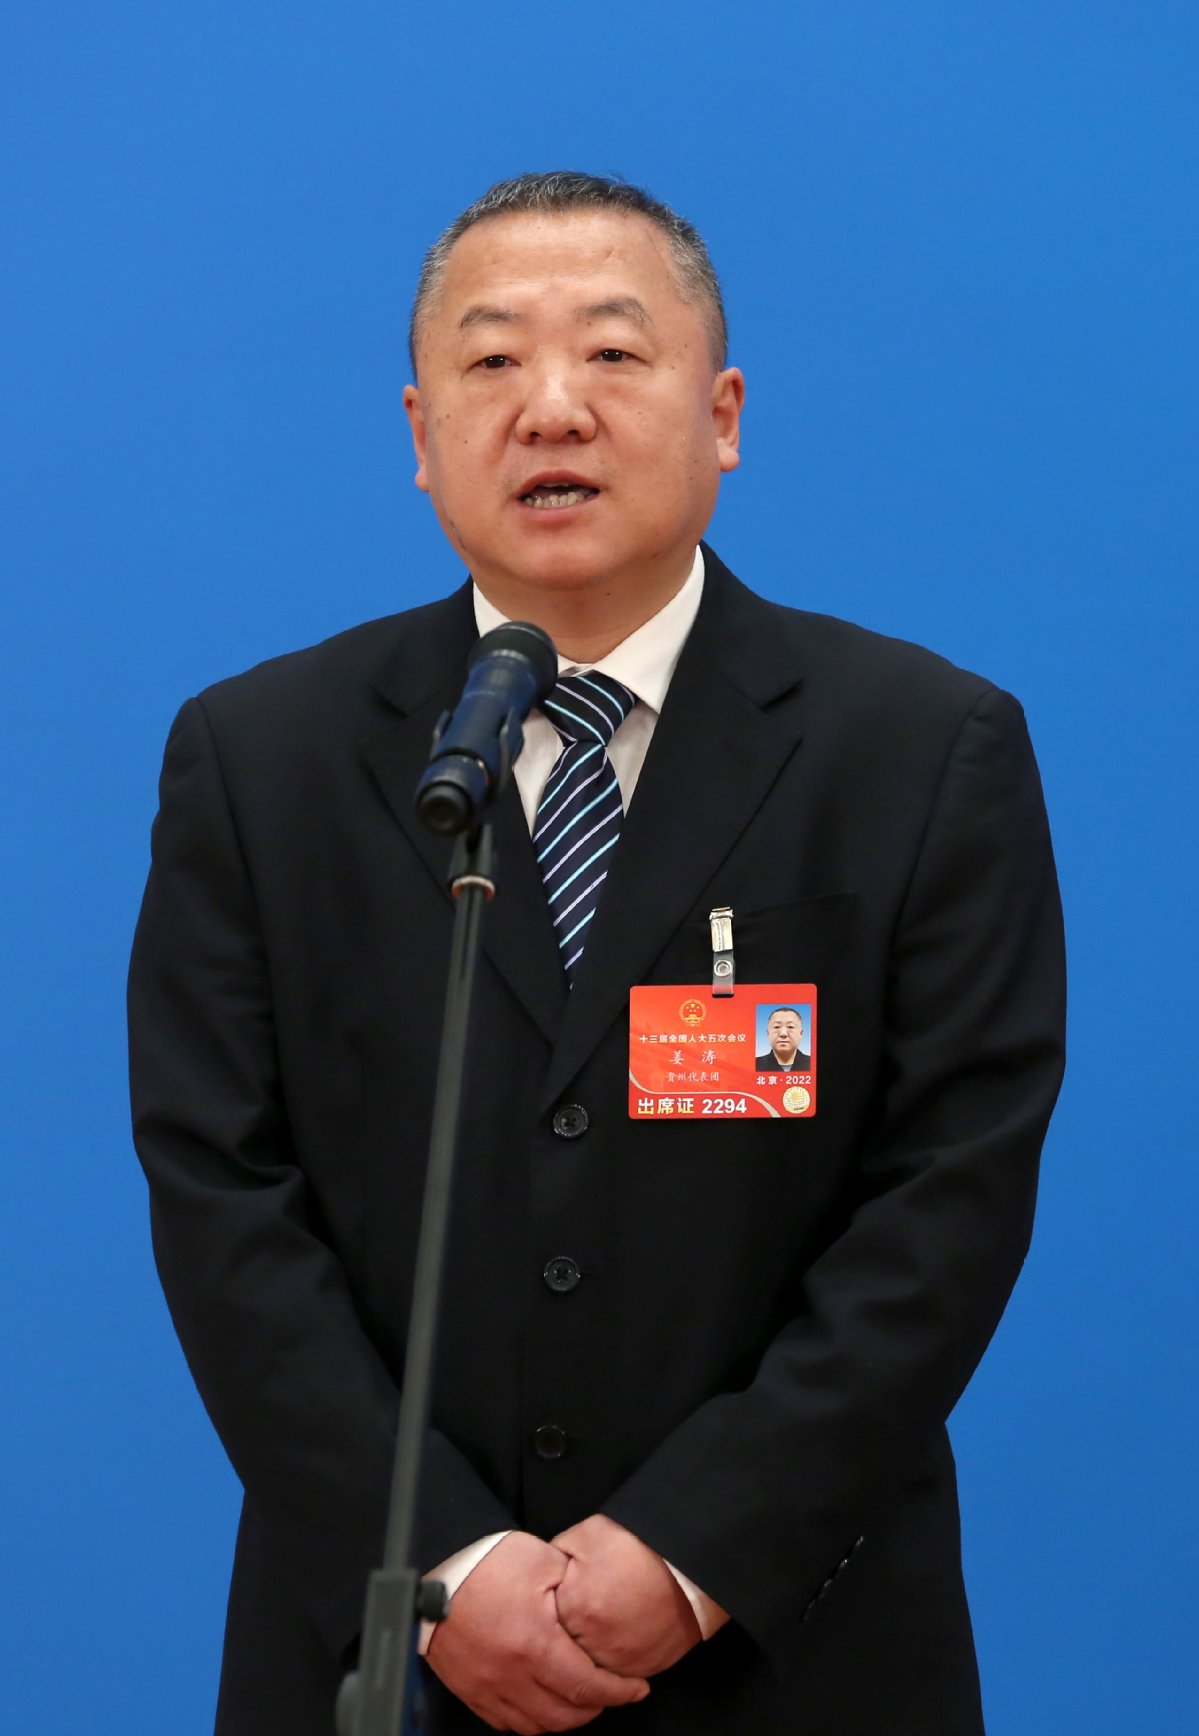 全国人大代表姜涛通过网络视频方式接受采访。中国日报记者 王敬 摄